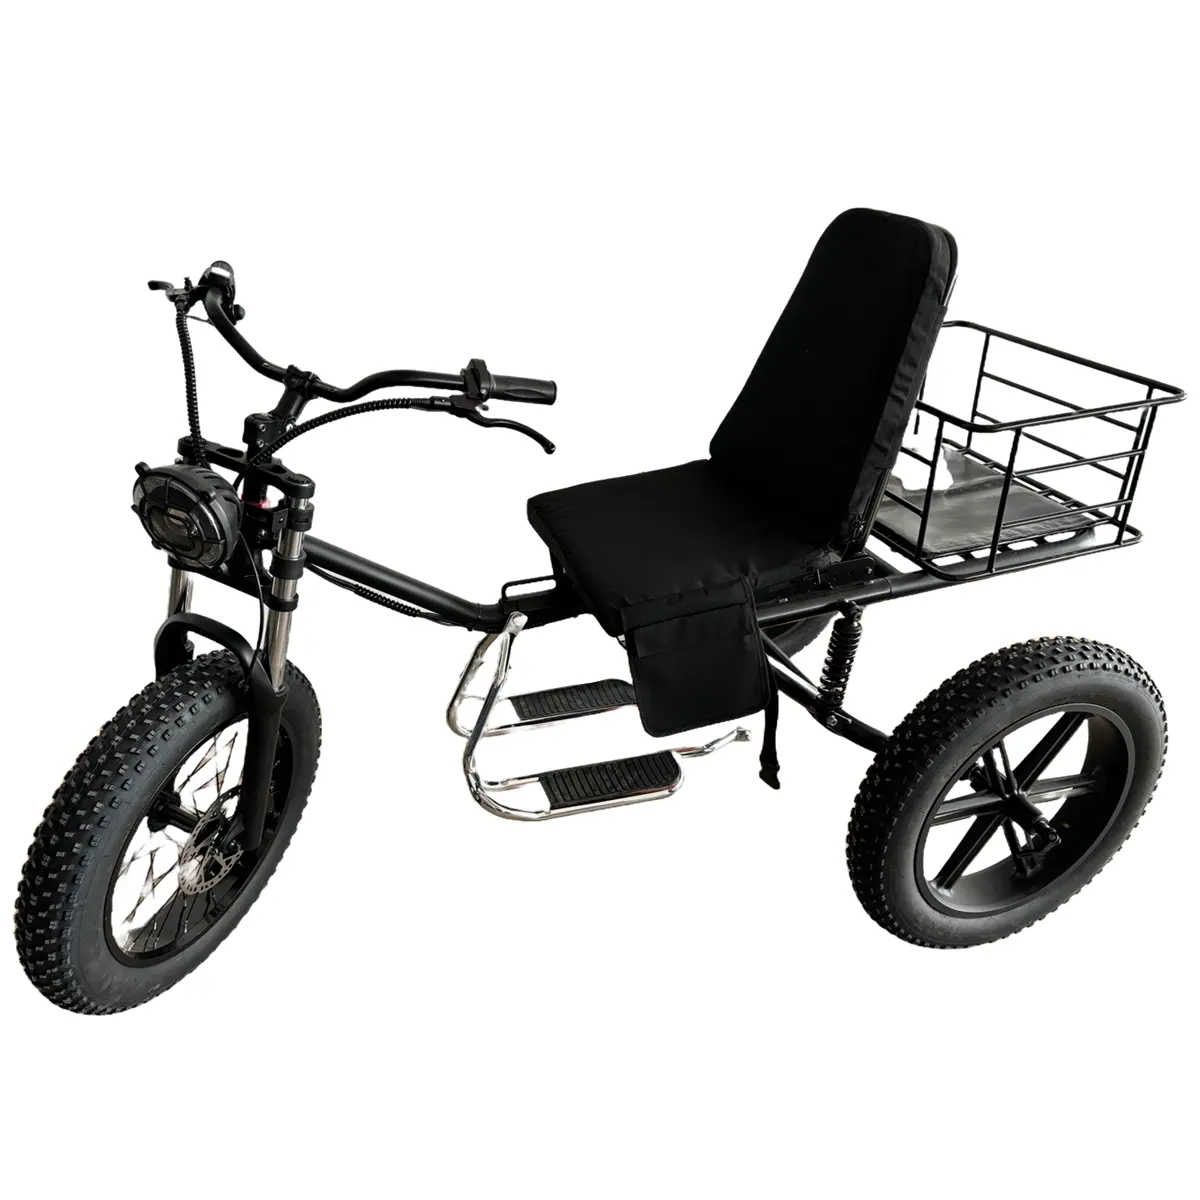 Triciclo elétrico direto da fábrica para adultos, novo triciclo elétrico, bicicleta elétrica, venda rápida, triciclos elétricos modernos